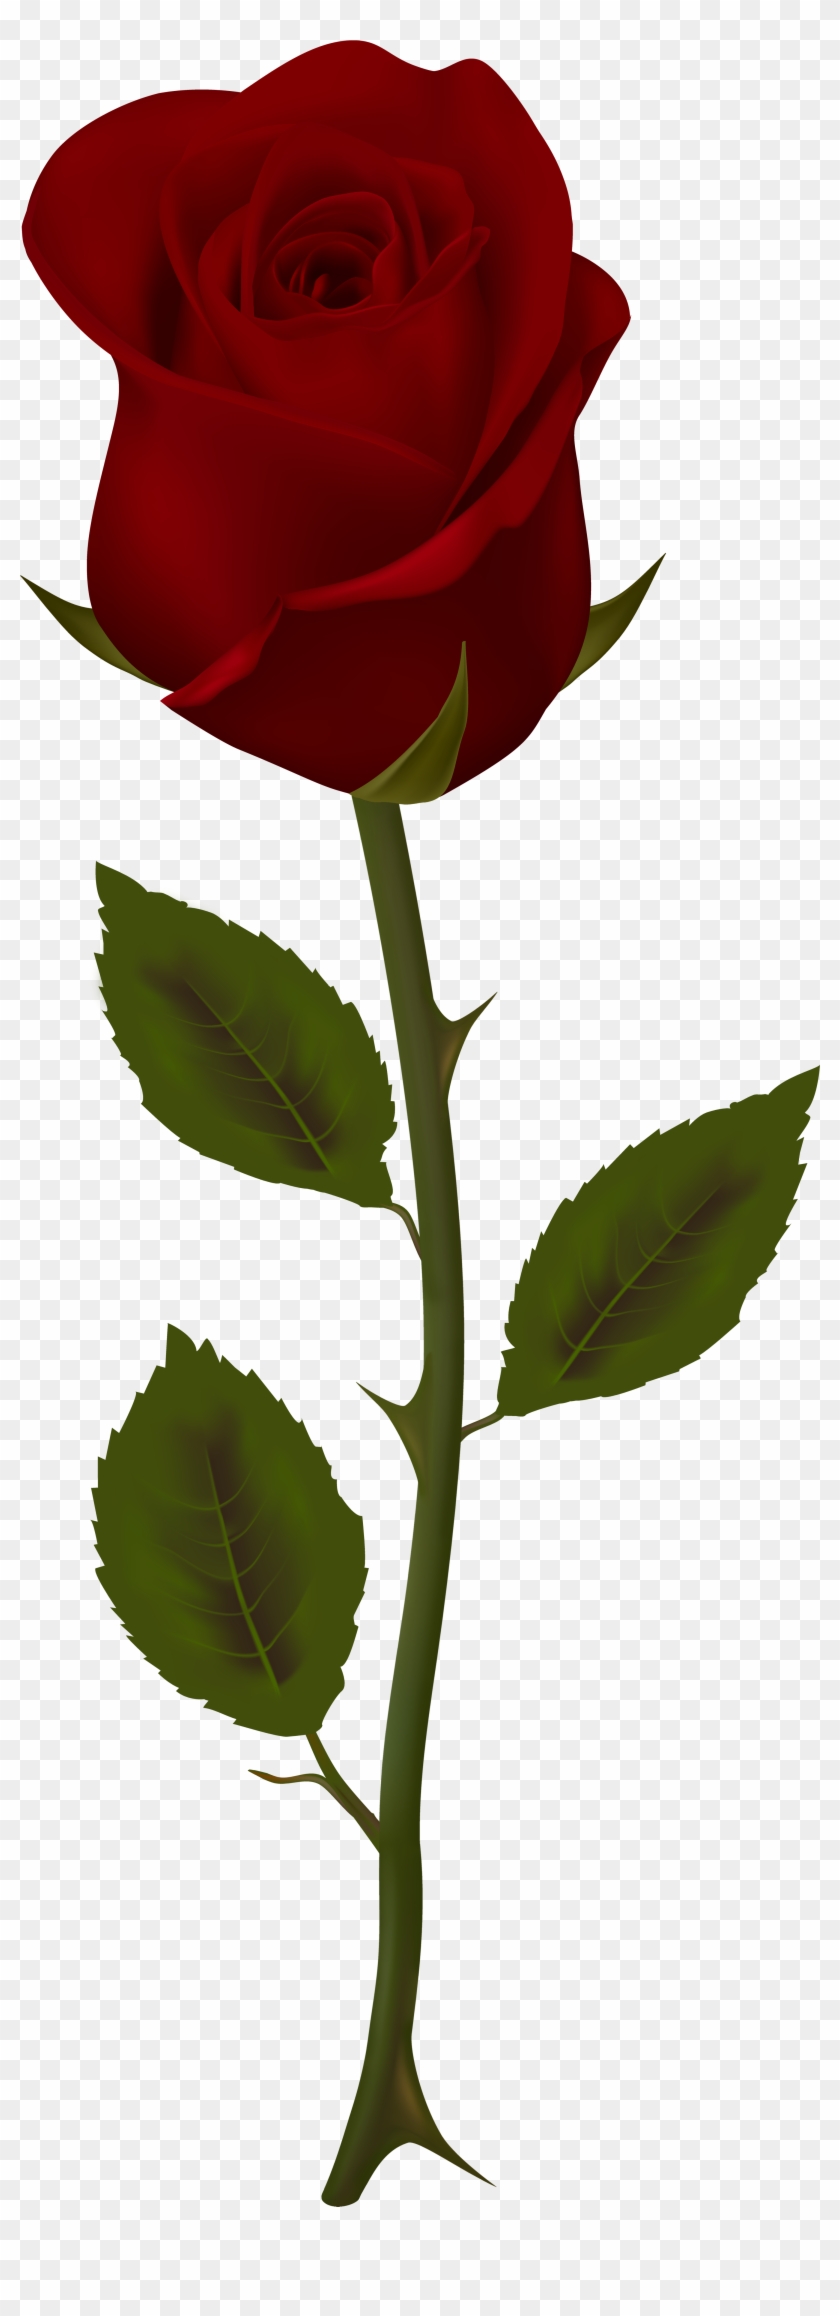 Oversætte misundelse gå på pension Dark Red Rose Transparent Png Clip Art - Red Rose Transparent - Free Transparent  PNG Clipart Images Download